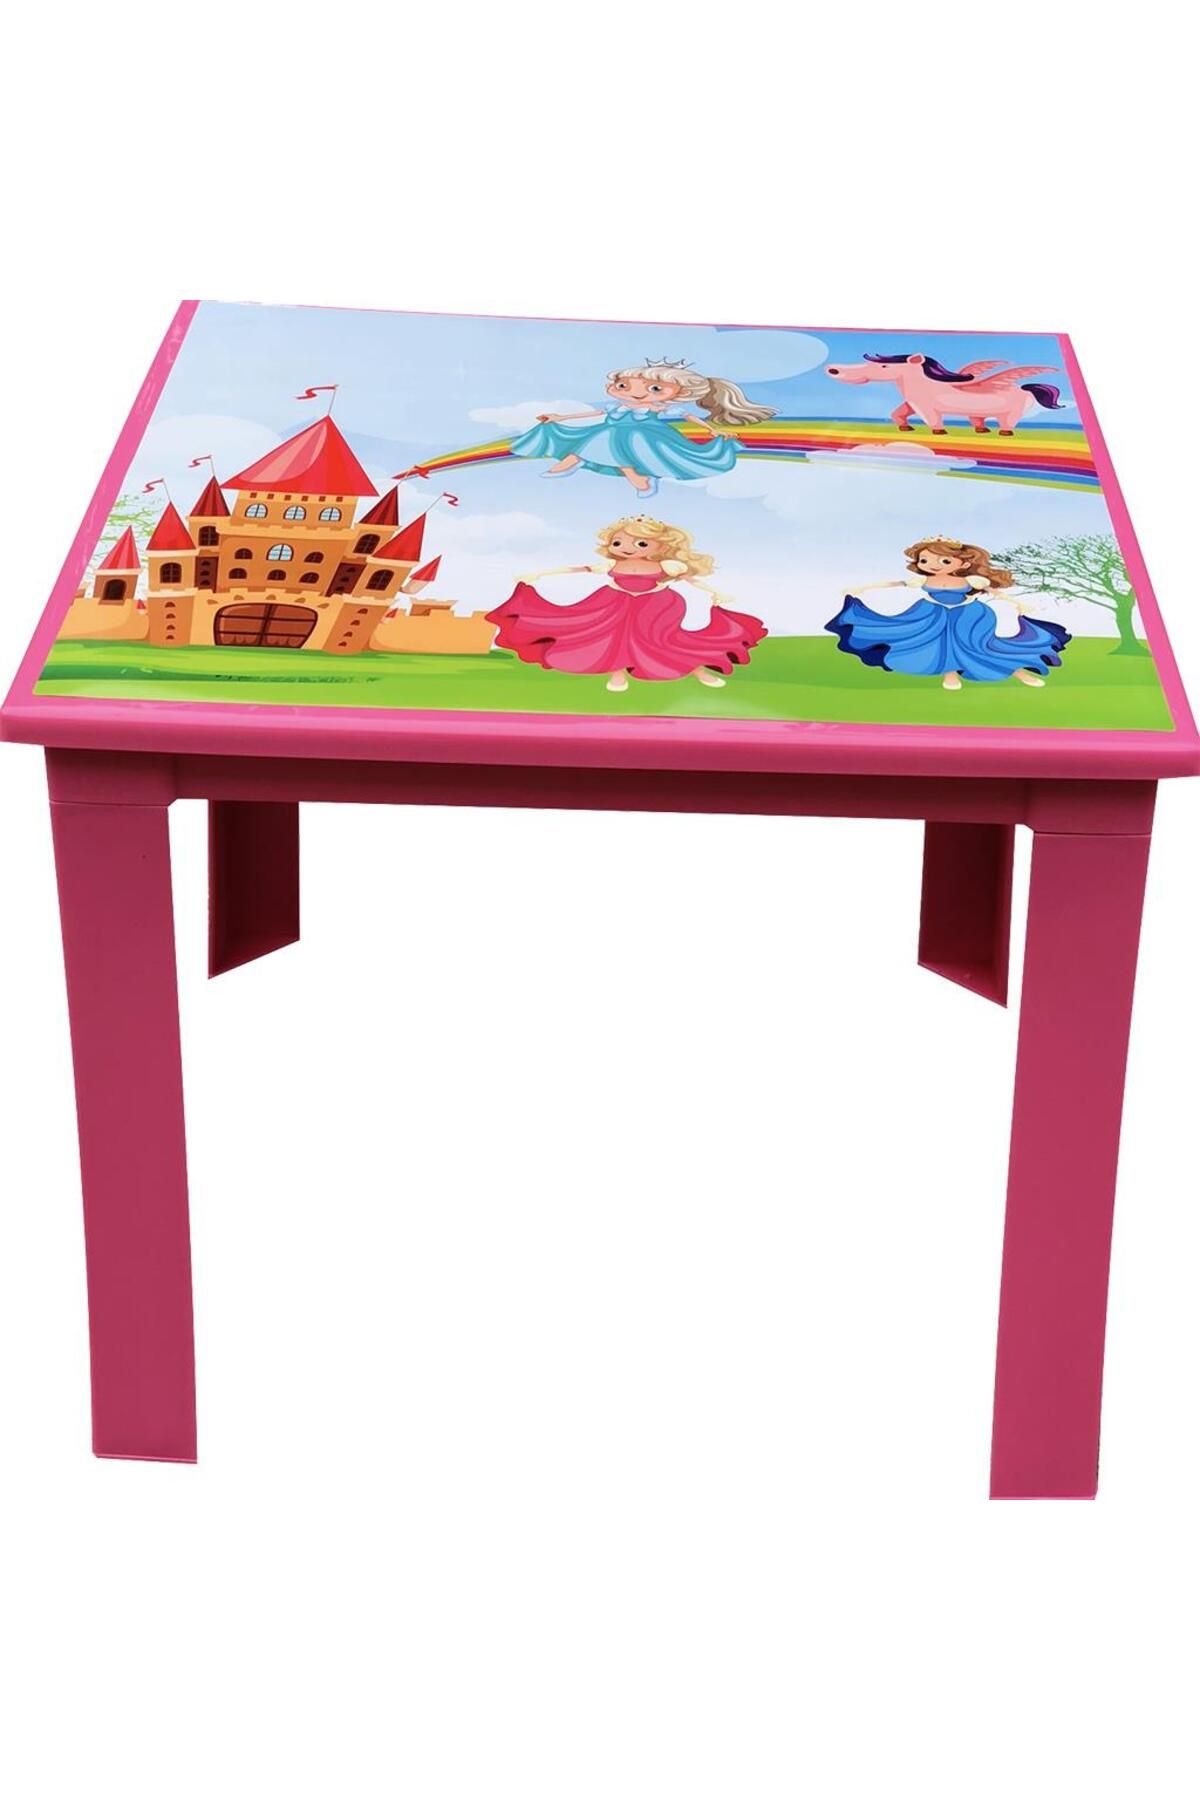 Fiore Çocuk Masası Plastik Pembe Prenses Resimli H40 1-3 Yaş Için